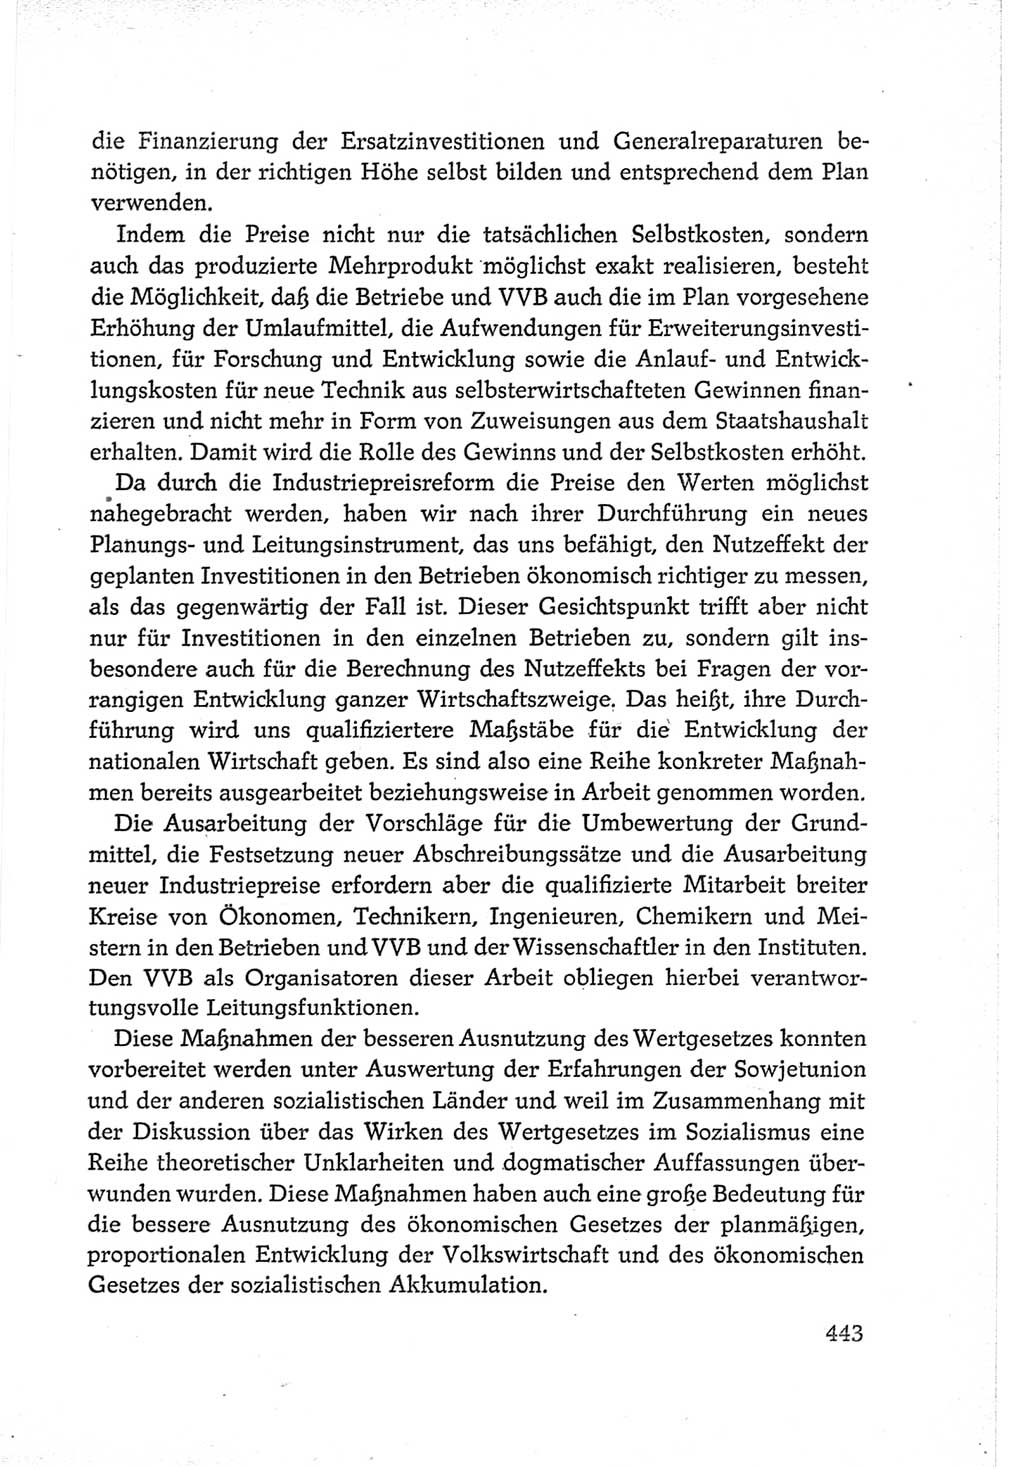 Protokoll der Verhandlungen des Ⅵ. Parteitages der Sozialistischen Einheitspartei Deutschlands (SED) [Deutsche Demokratische Republik (DDR)] 1963, Band Ⅲ, Seite 443 (Prot. Verh. Ⅵ. PT SED DDR 1963, Bd. Ⅲ, S. 443)